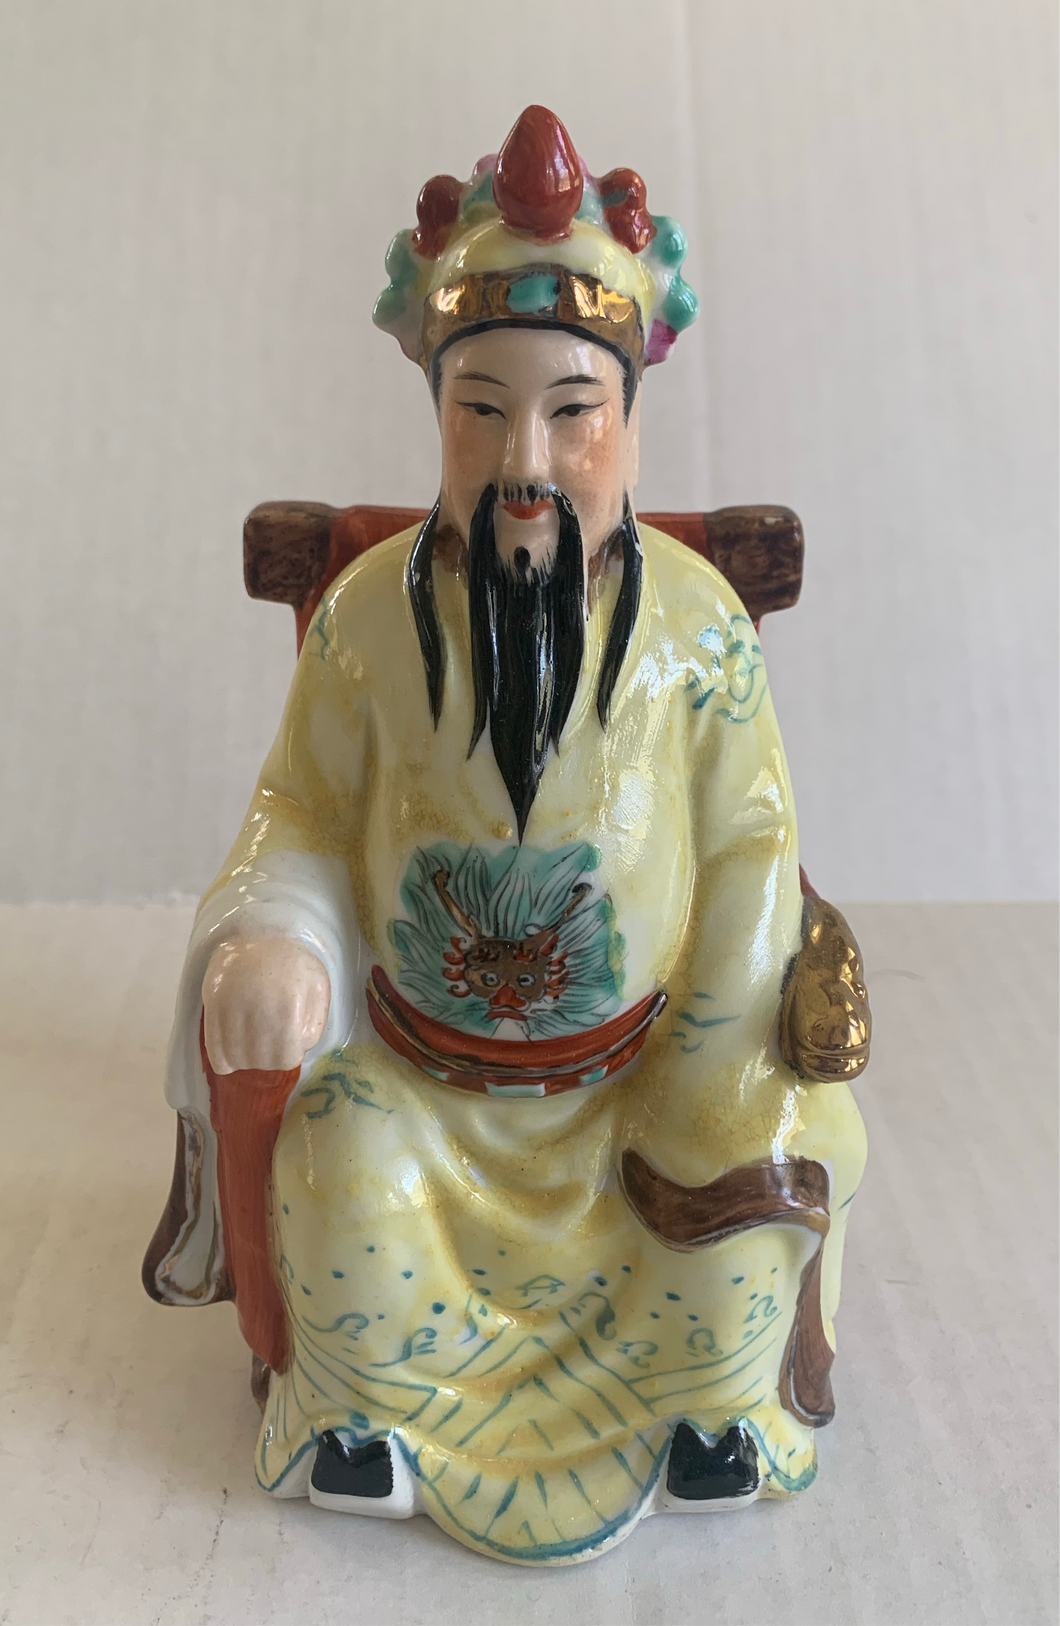 Vintage Porcelain Chinese Emperor Figurine